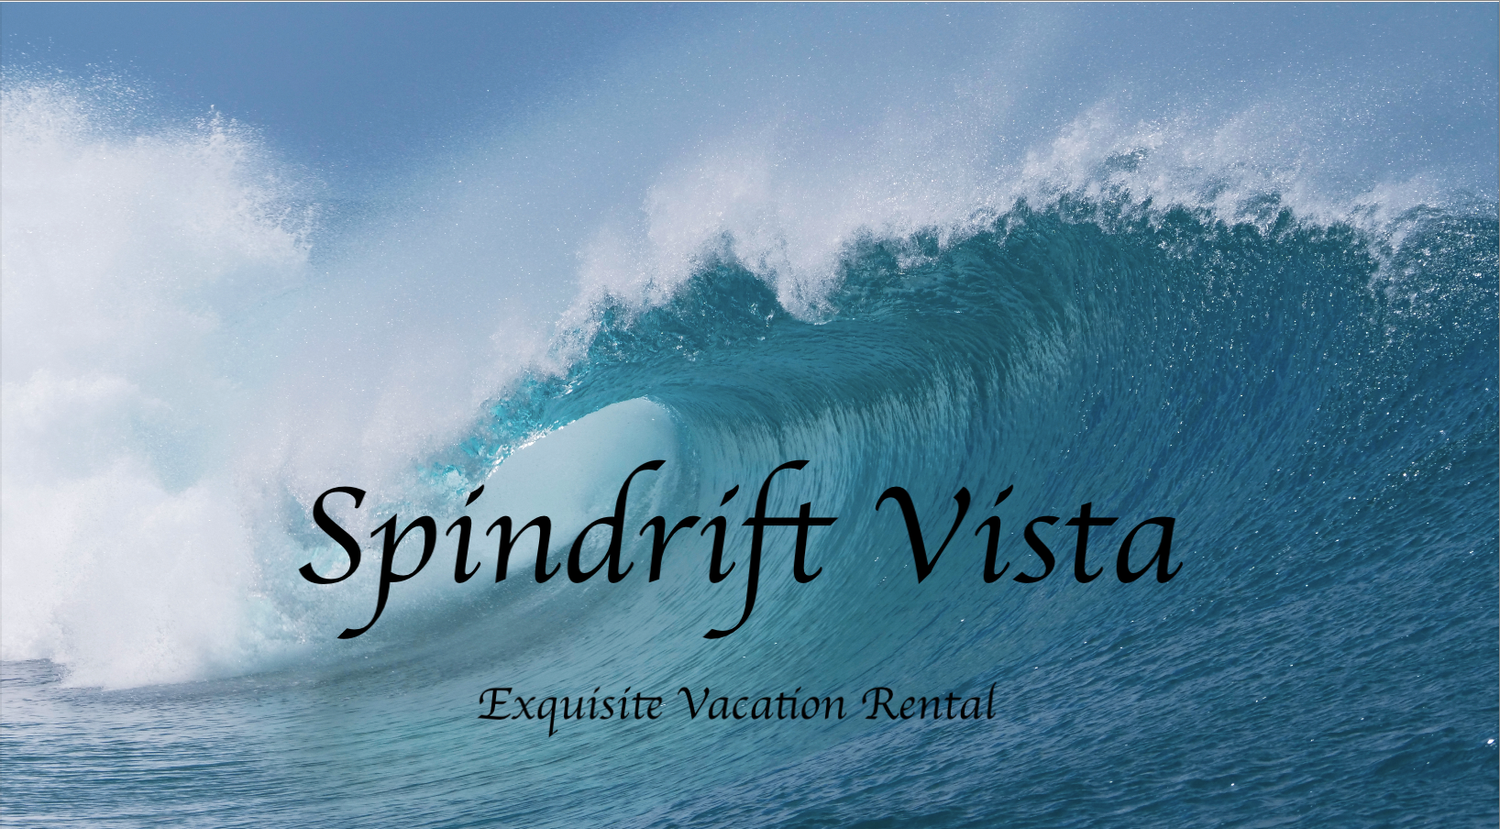 Spindrift Vista